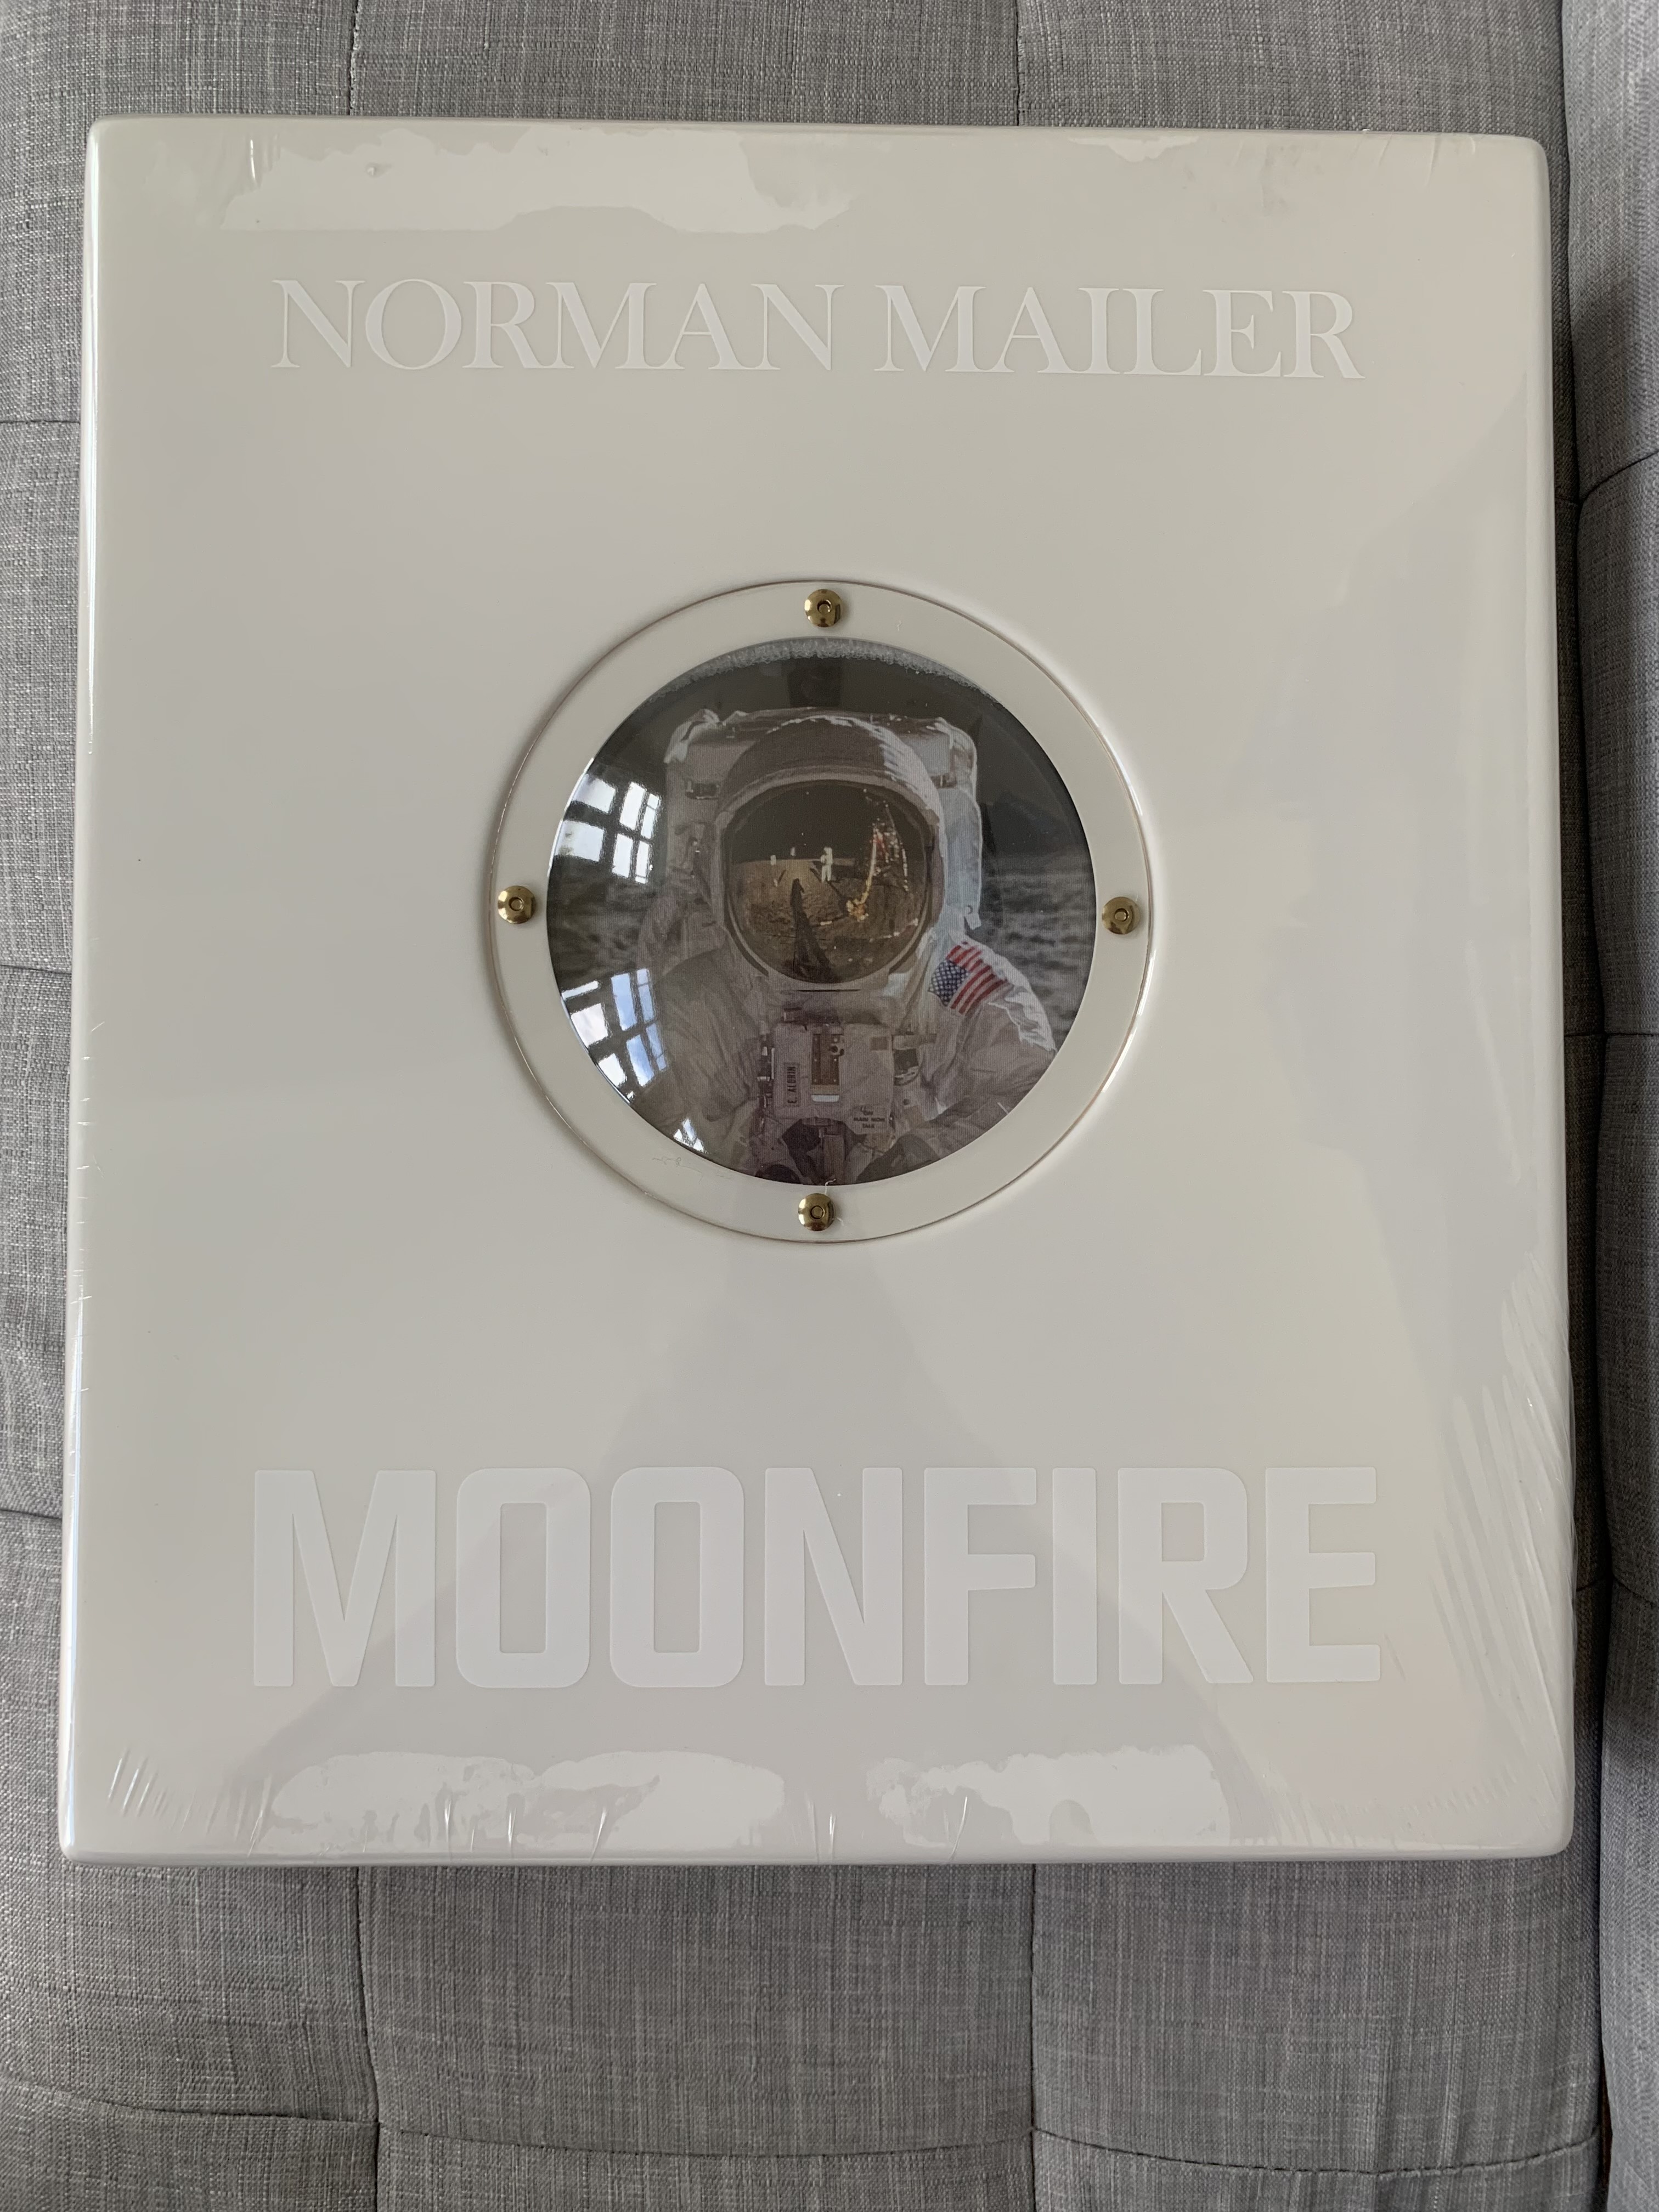 TASCHEN Books: Norman Mailer. MoonFire. Édition 50e anniversaire